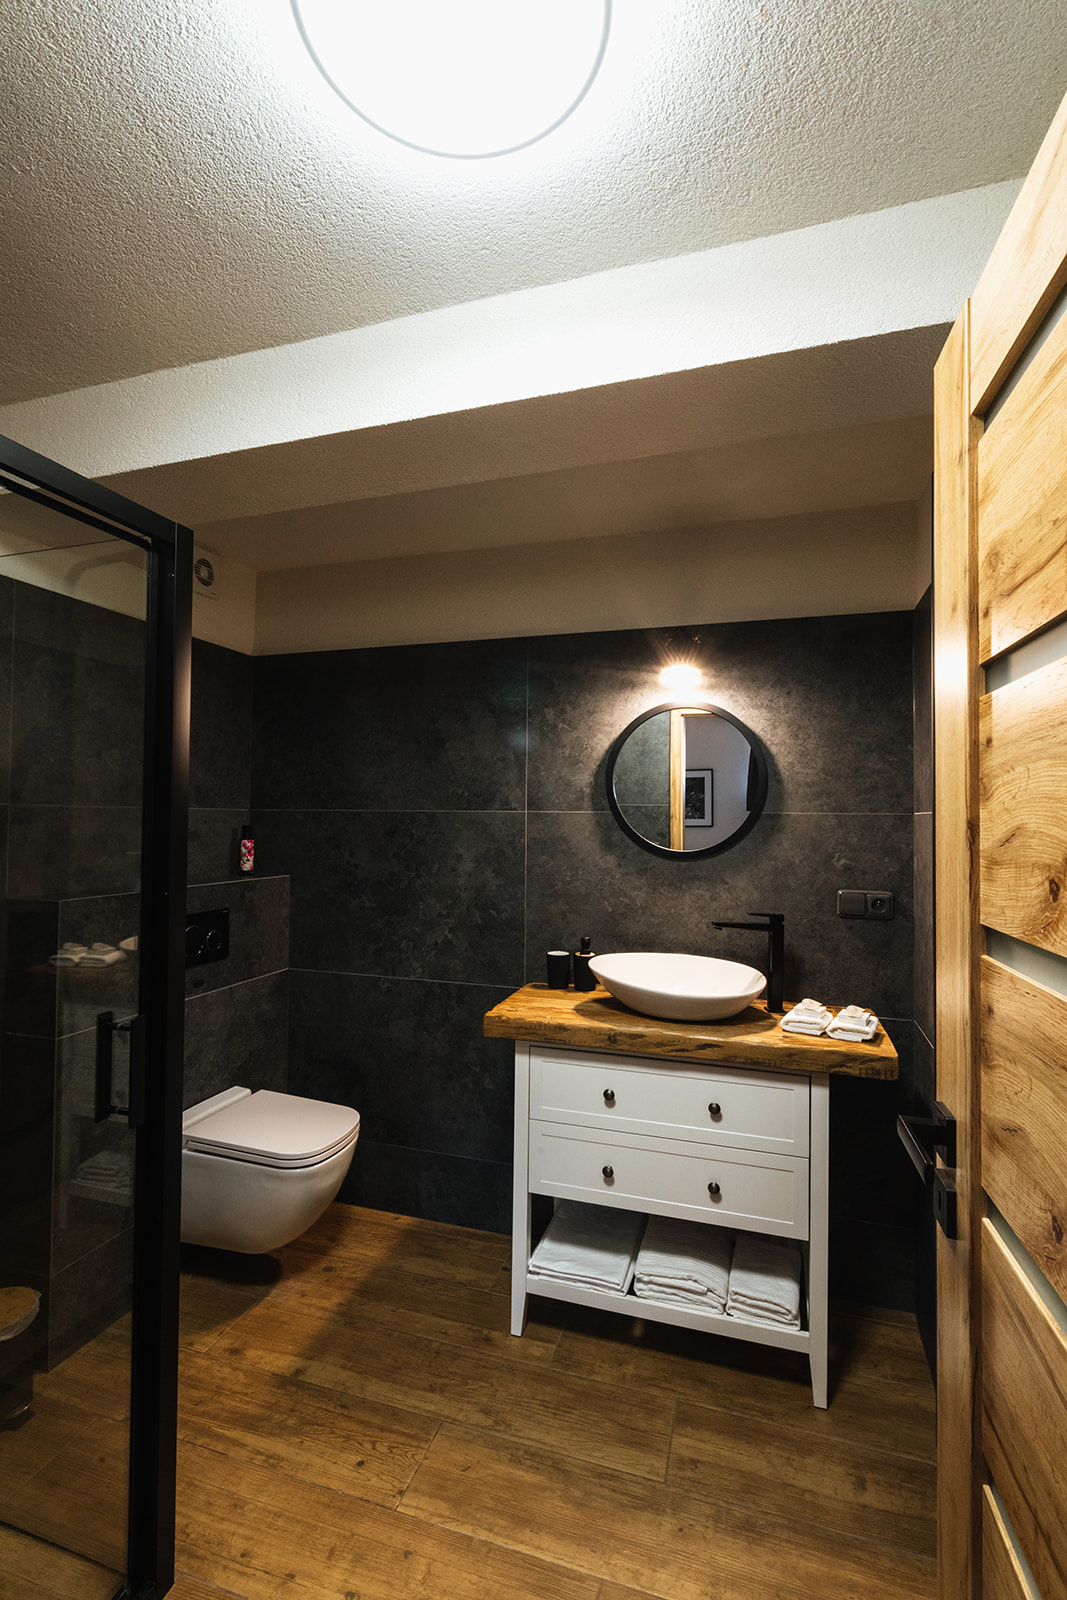 vkusná moderní koupelna s podlahovým vytápěním, ubytování v tichu